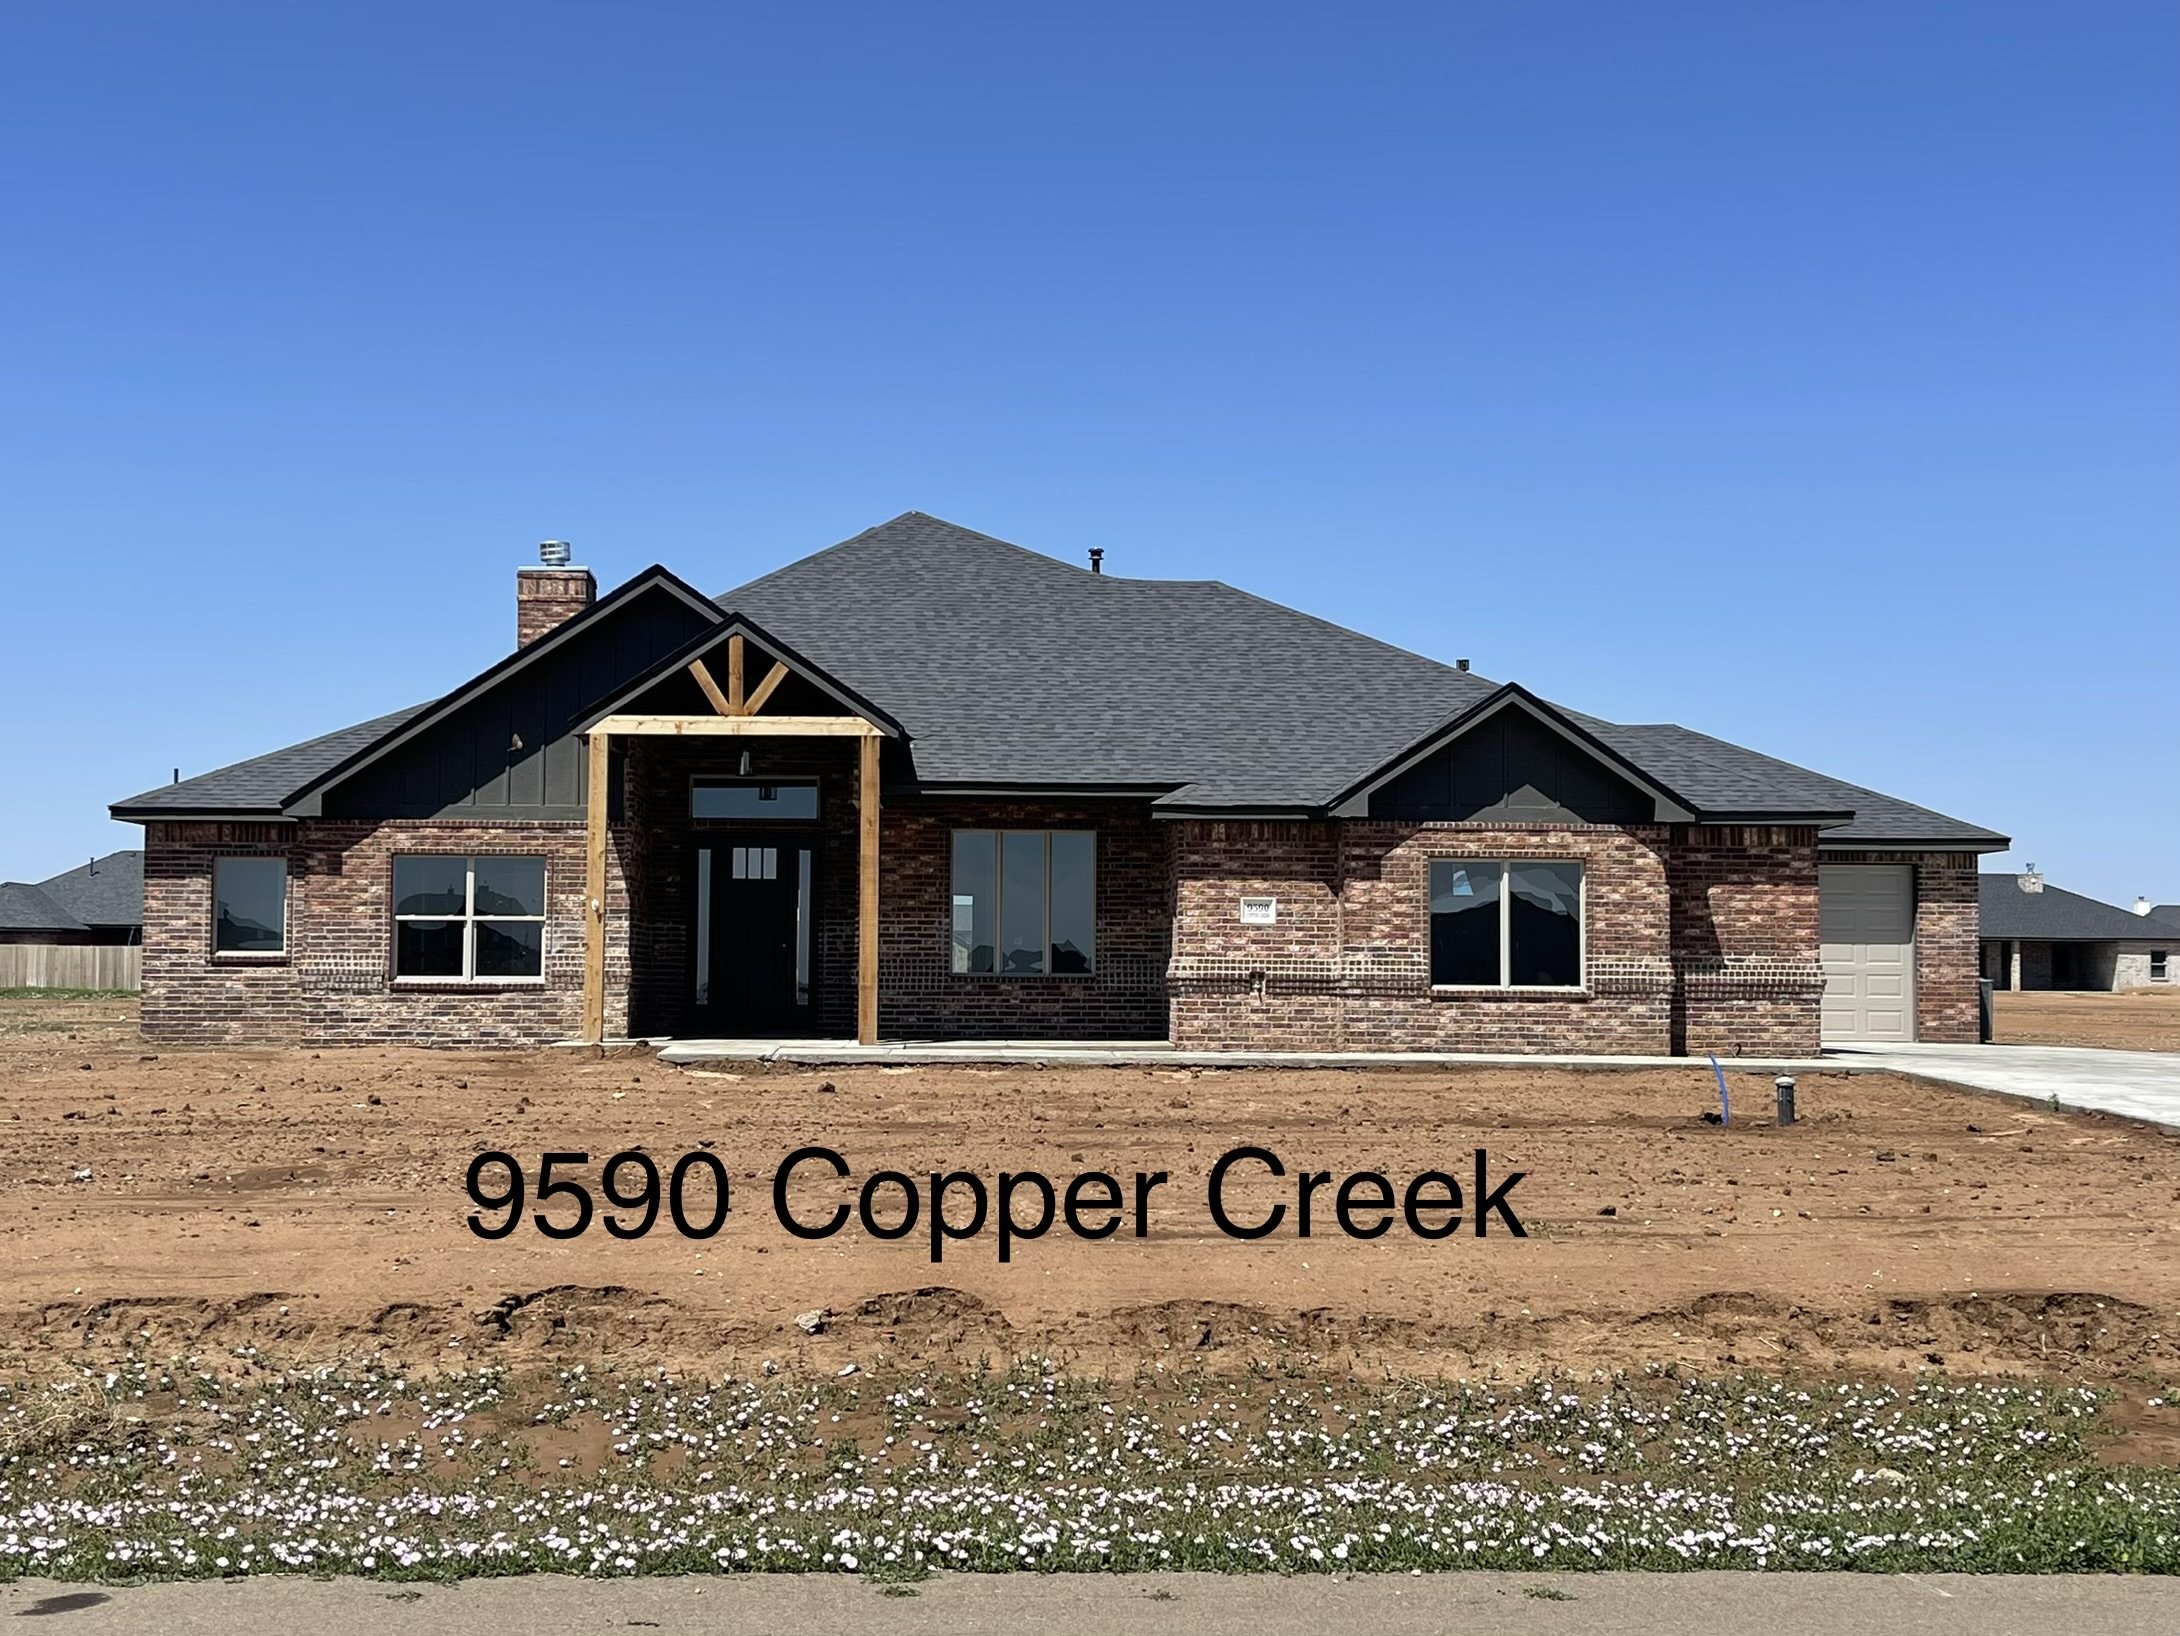 9590 Copper Creek Exterior.jpg